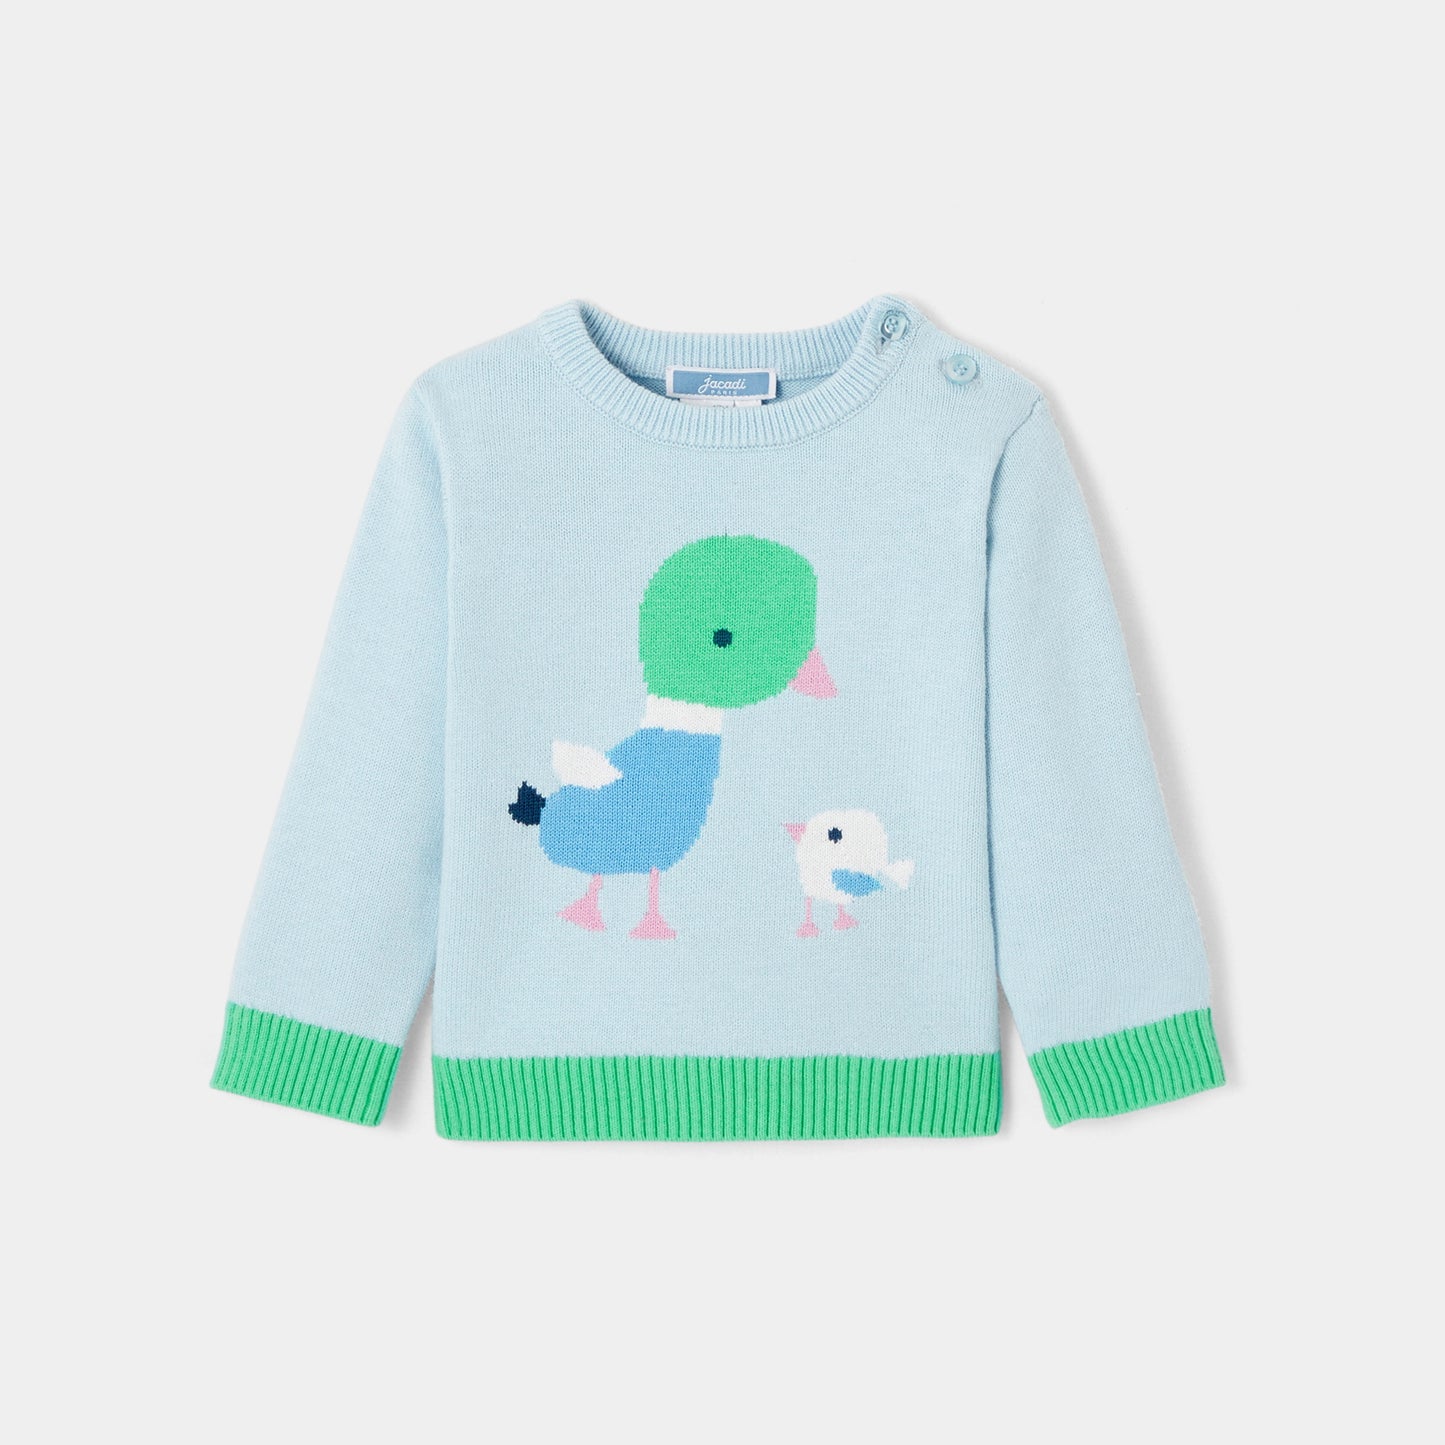 PUPI - デザイン入りセーター